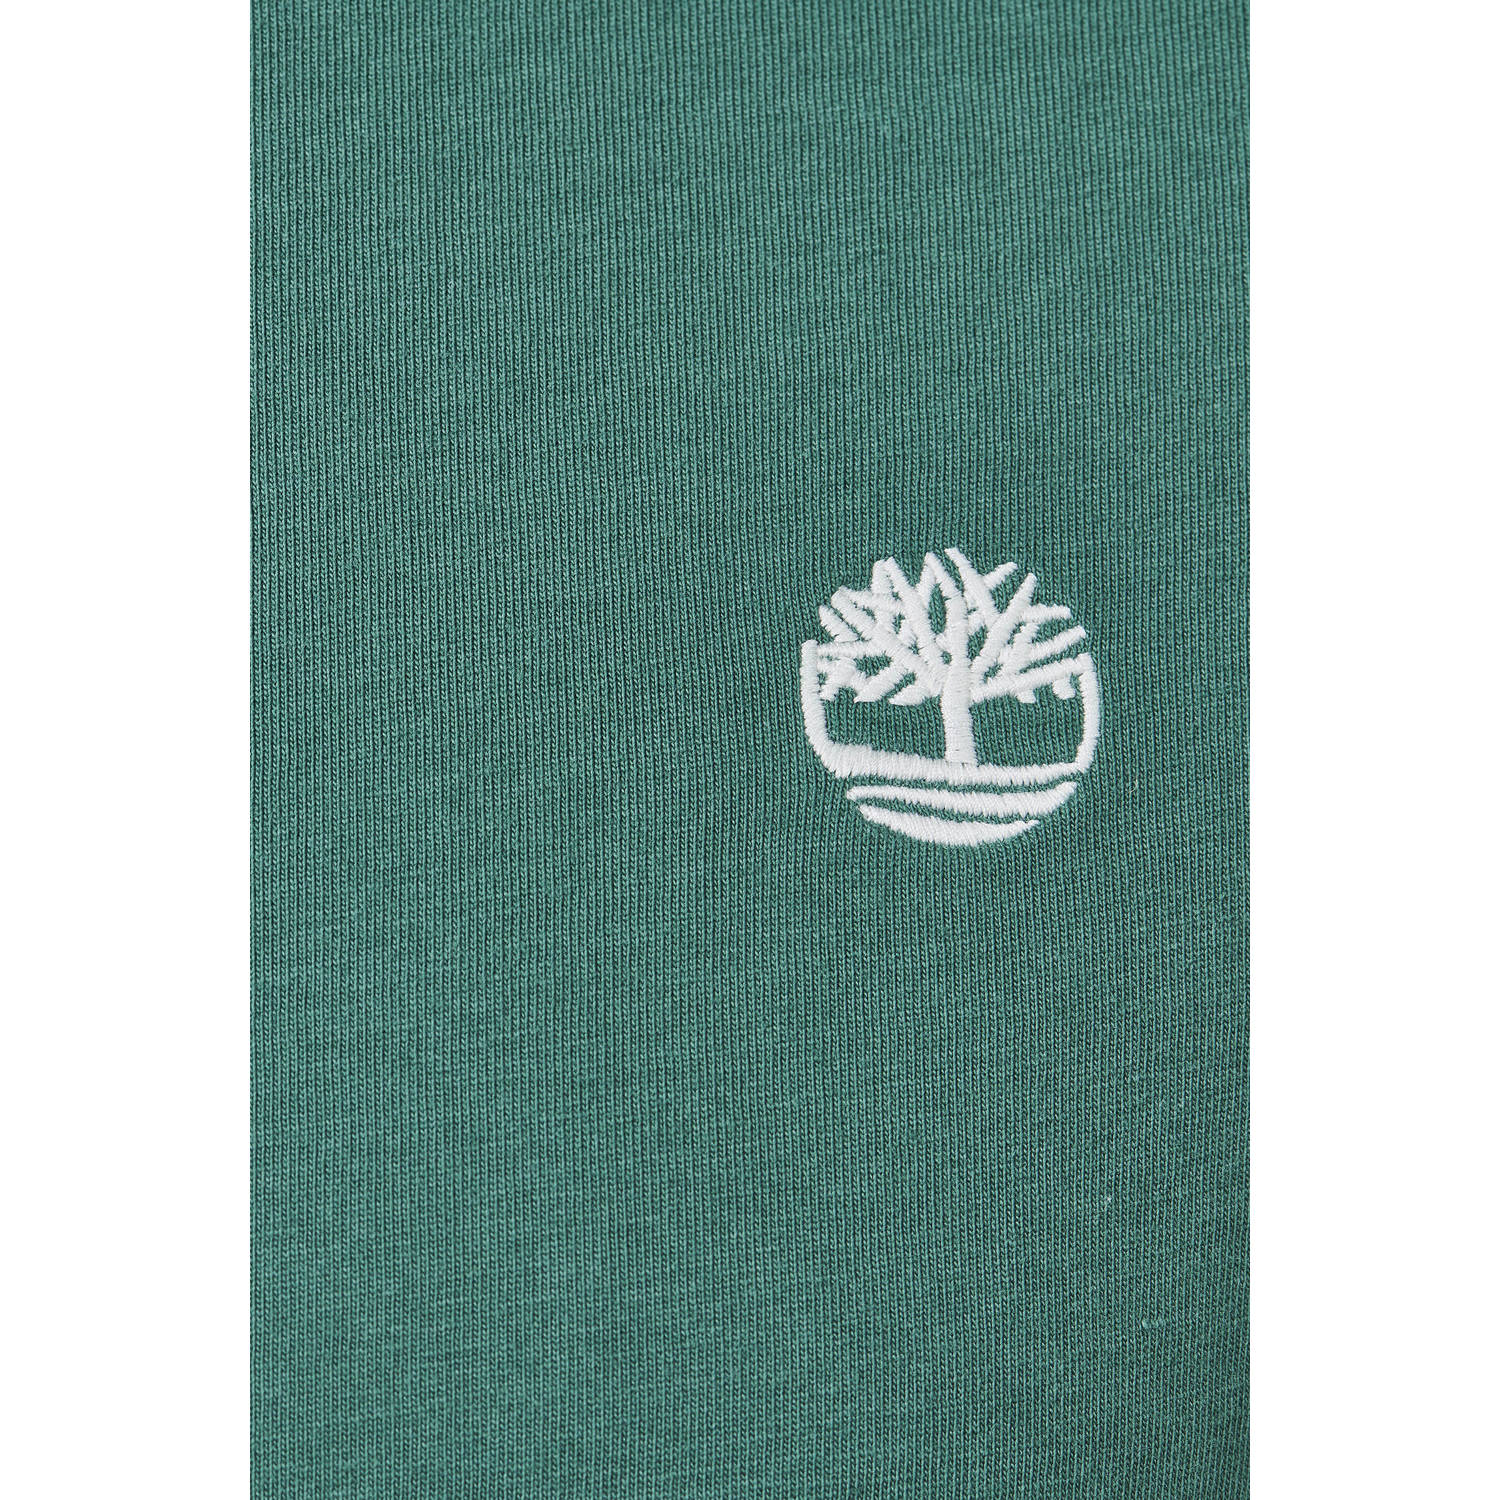 Timberland T-shirt van biologisch katoen groen